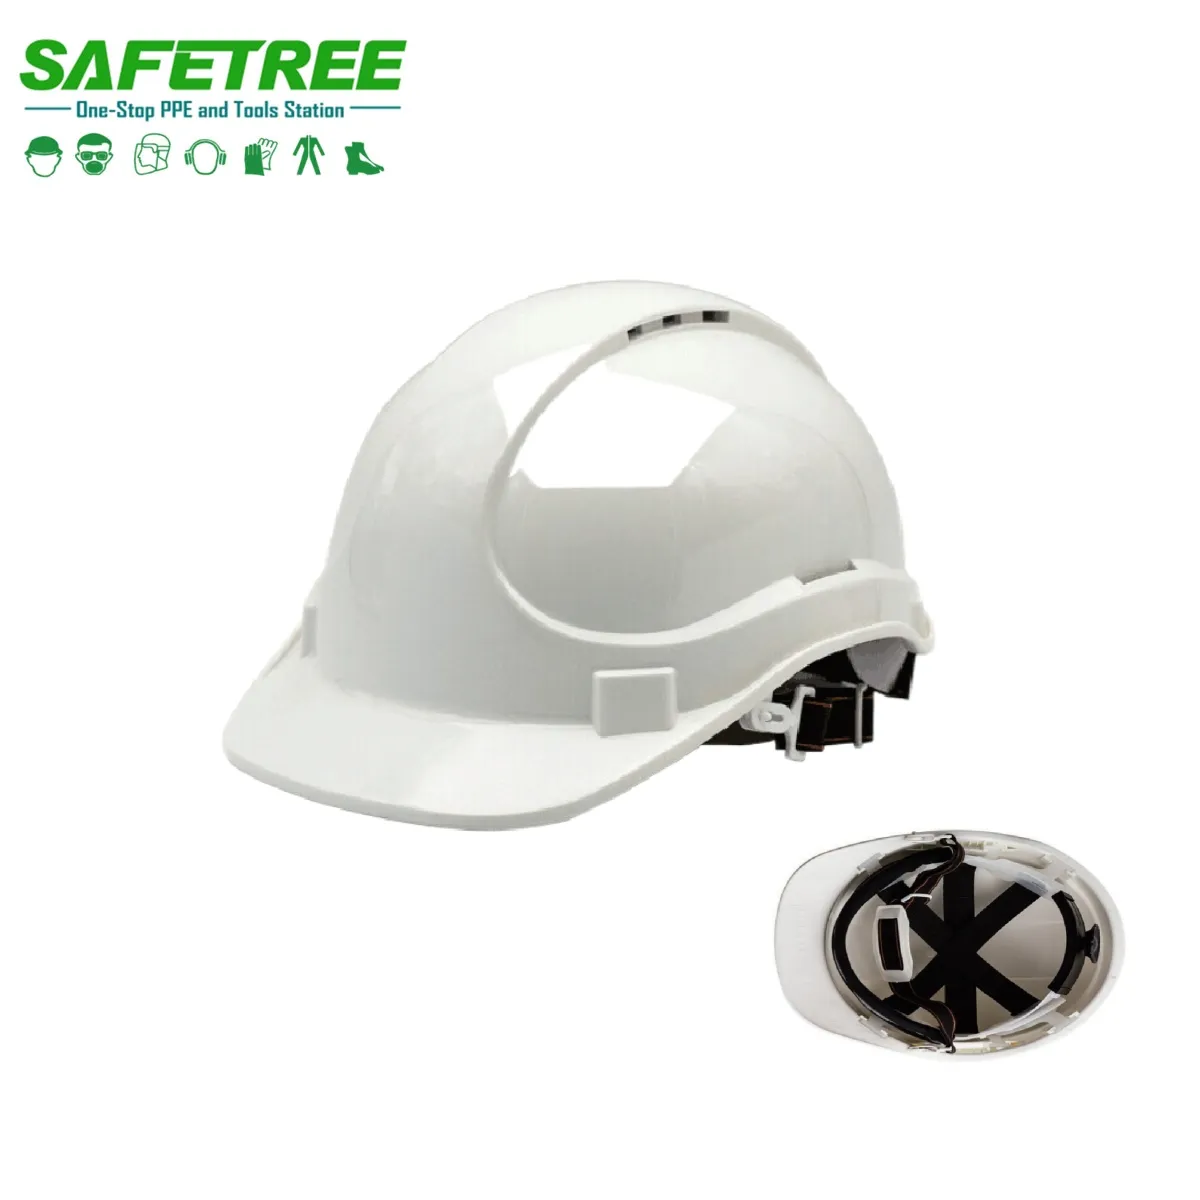 Kaliteli CE EN397 standart kişisel koruyucu endüstriyel ABS emniyet kaskı inşaat madencilik ağır sert şapka